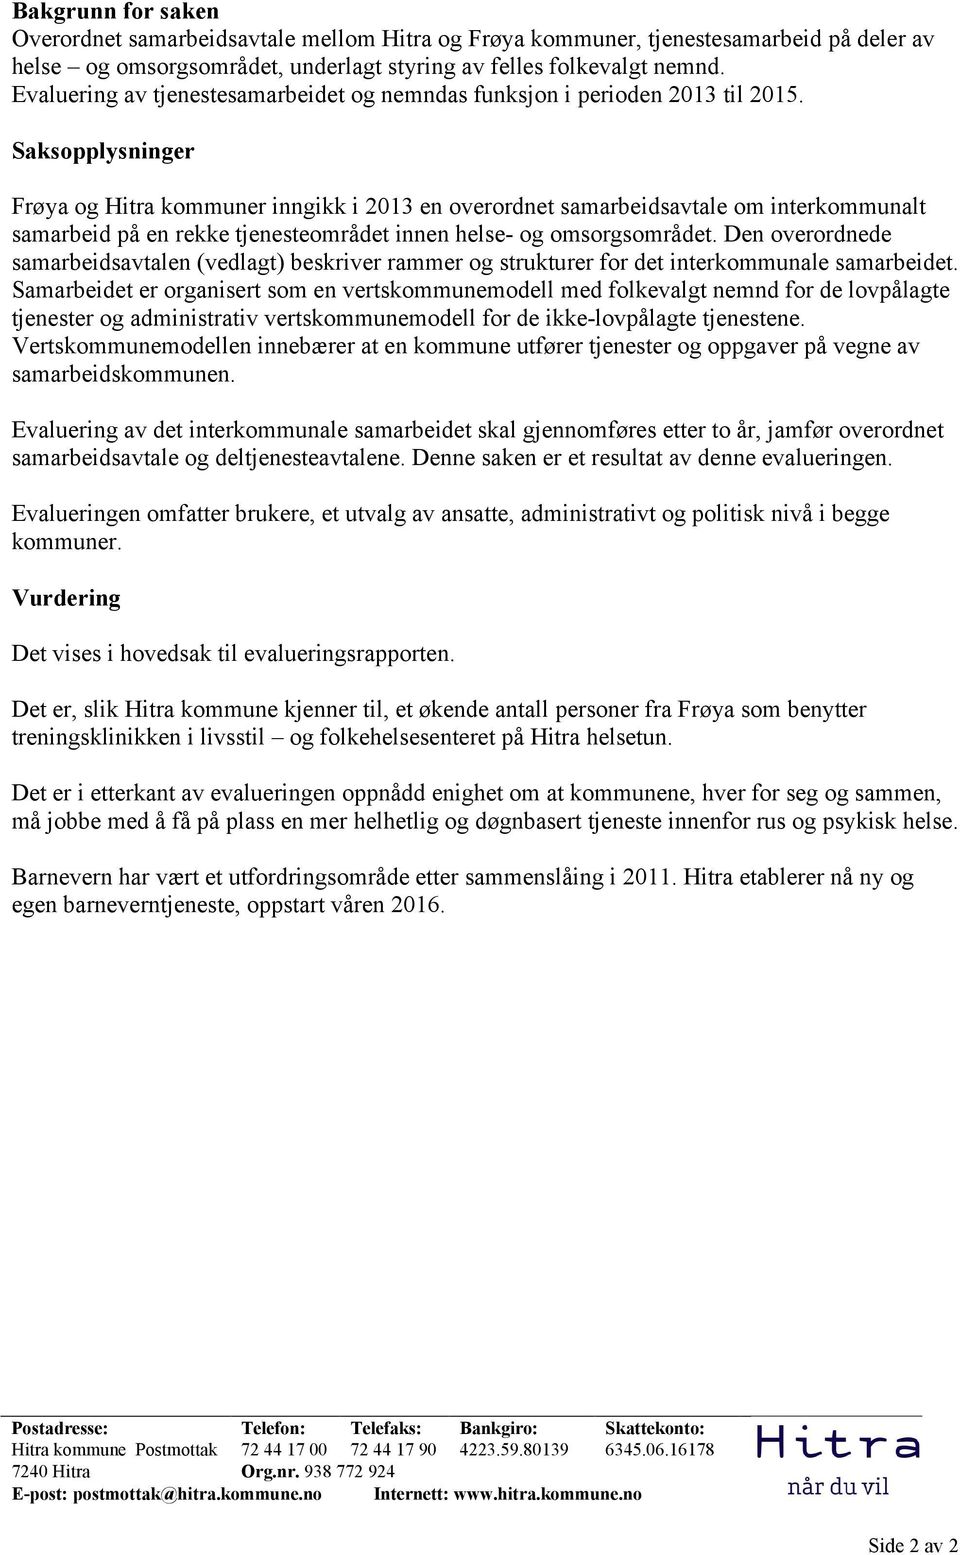 Saksopplysninger Frøya og Hitra kommuner inngikk i 2013 en overordnet samarbeidsavtale om interkommunalt samarbeid på en rekke tjenesteområdet innen helse- og omsorgsområdet.